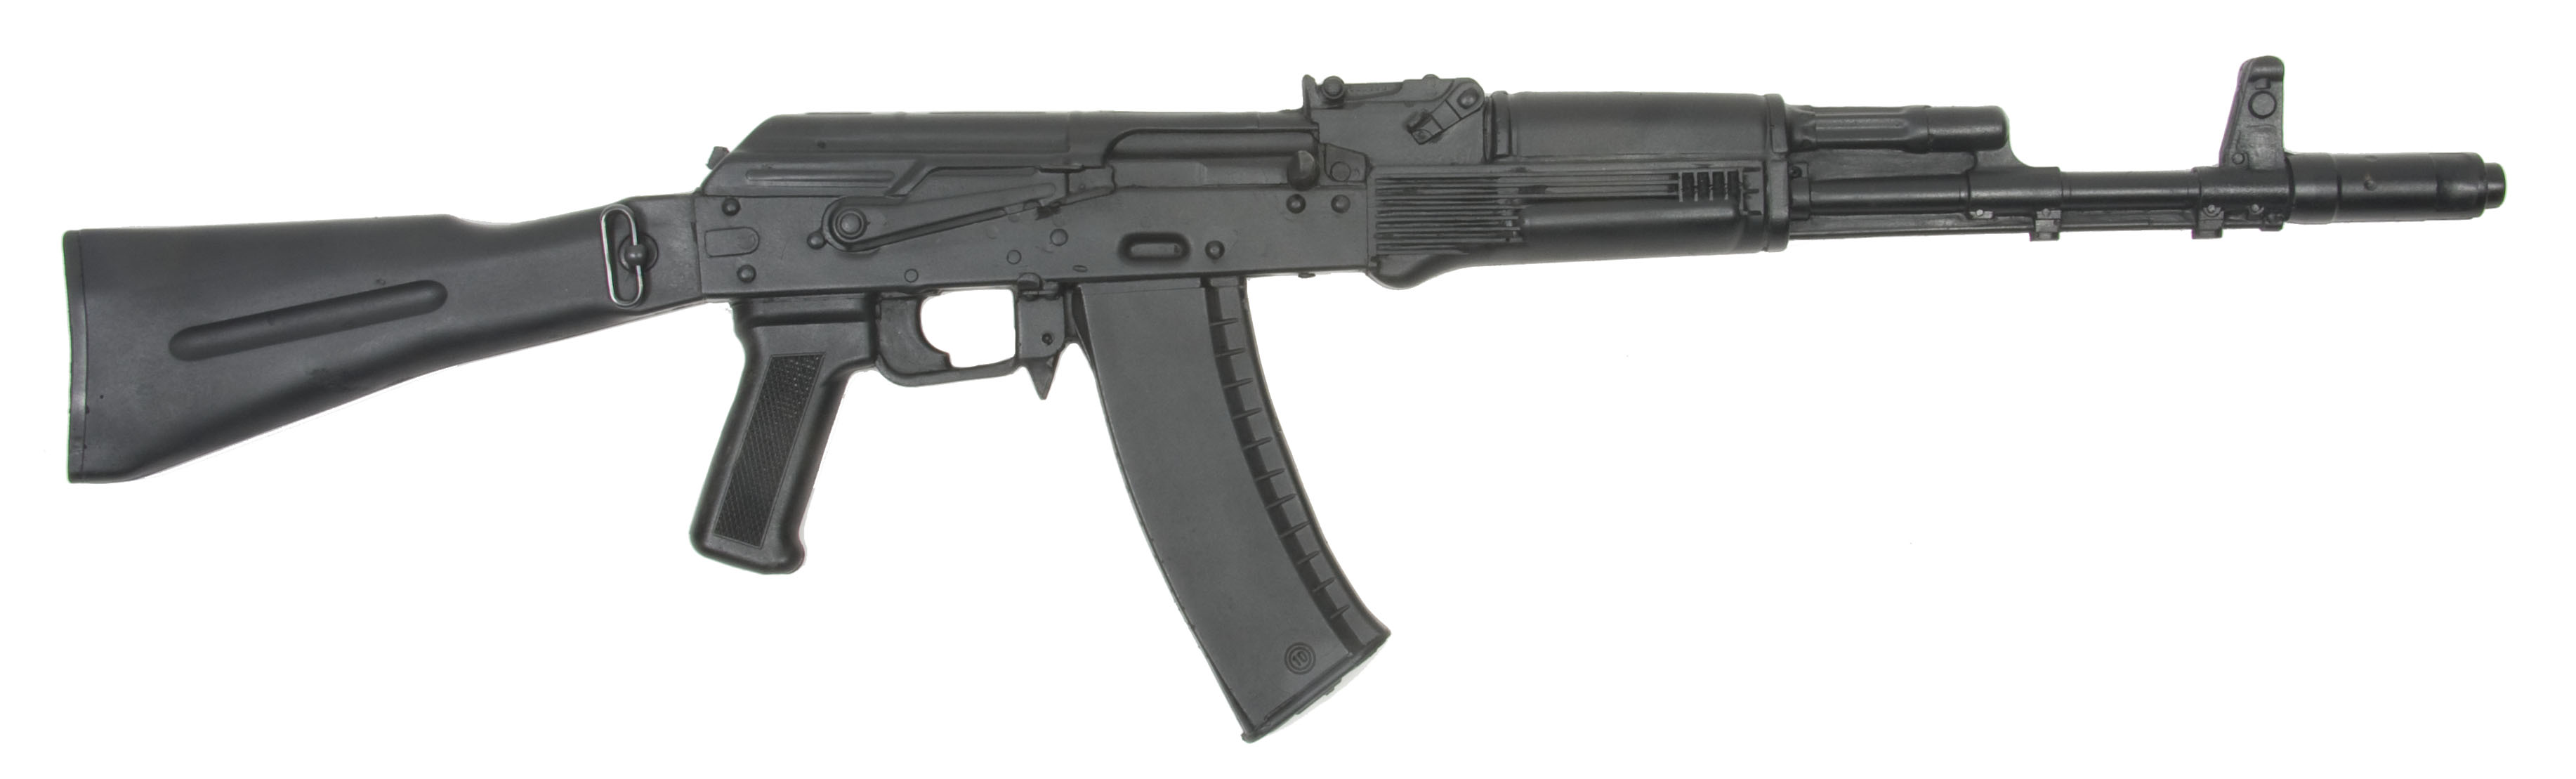 Weapons AK 47 3668x1109